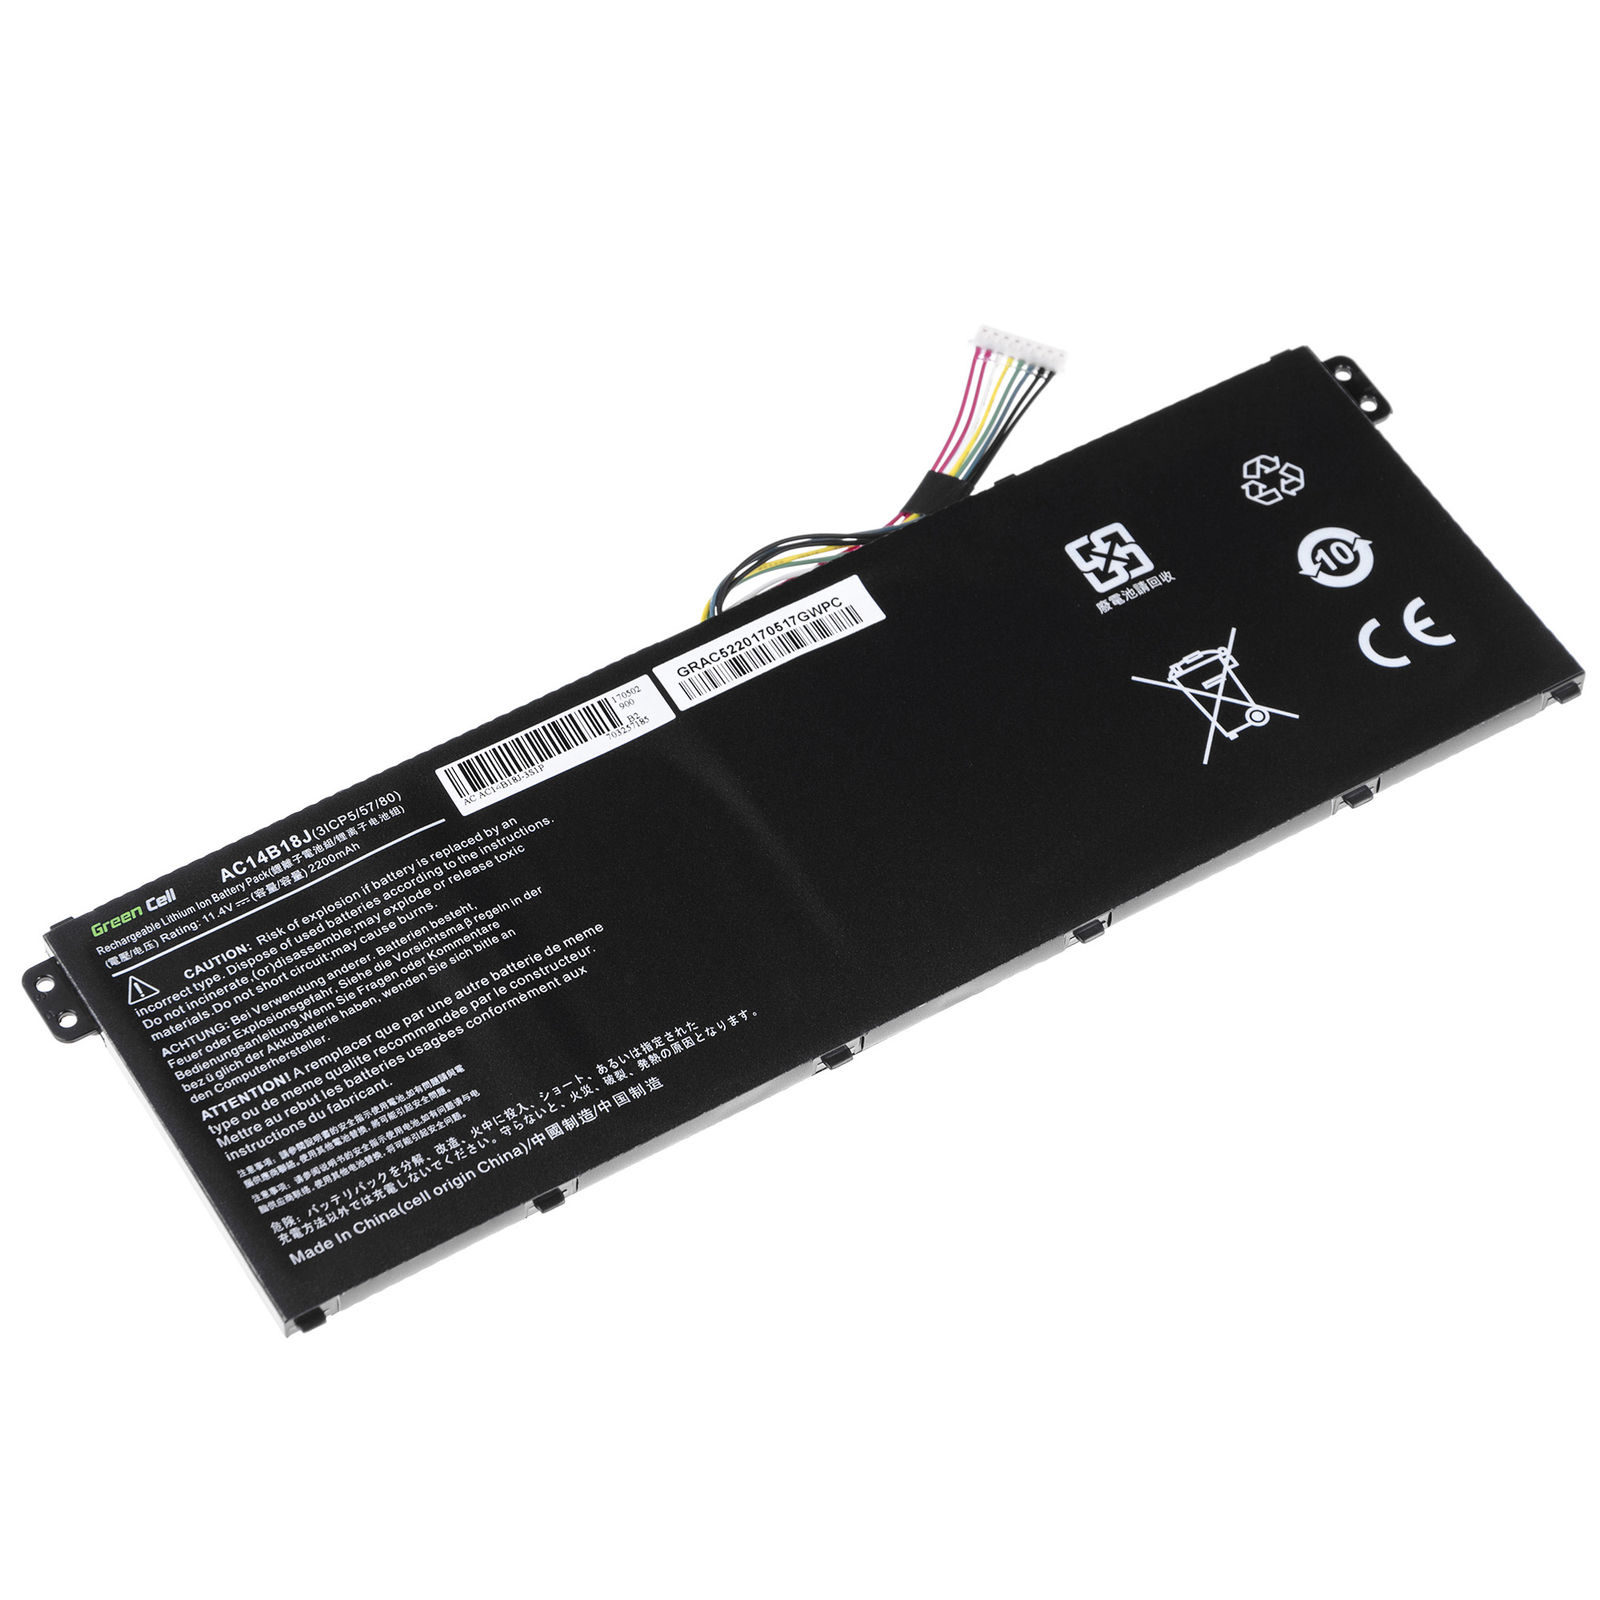 Batería para Acer Aspire ES 17 ES1-731G-P1MC ES1-731G-P27Y 2200mAh(compatible)